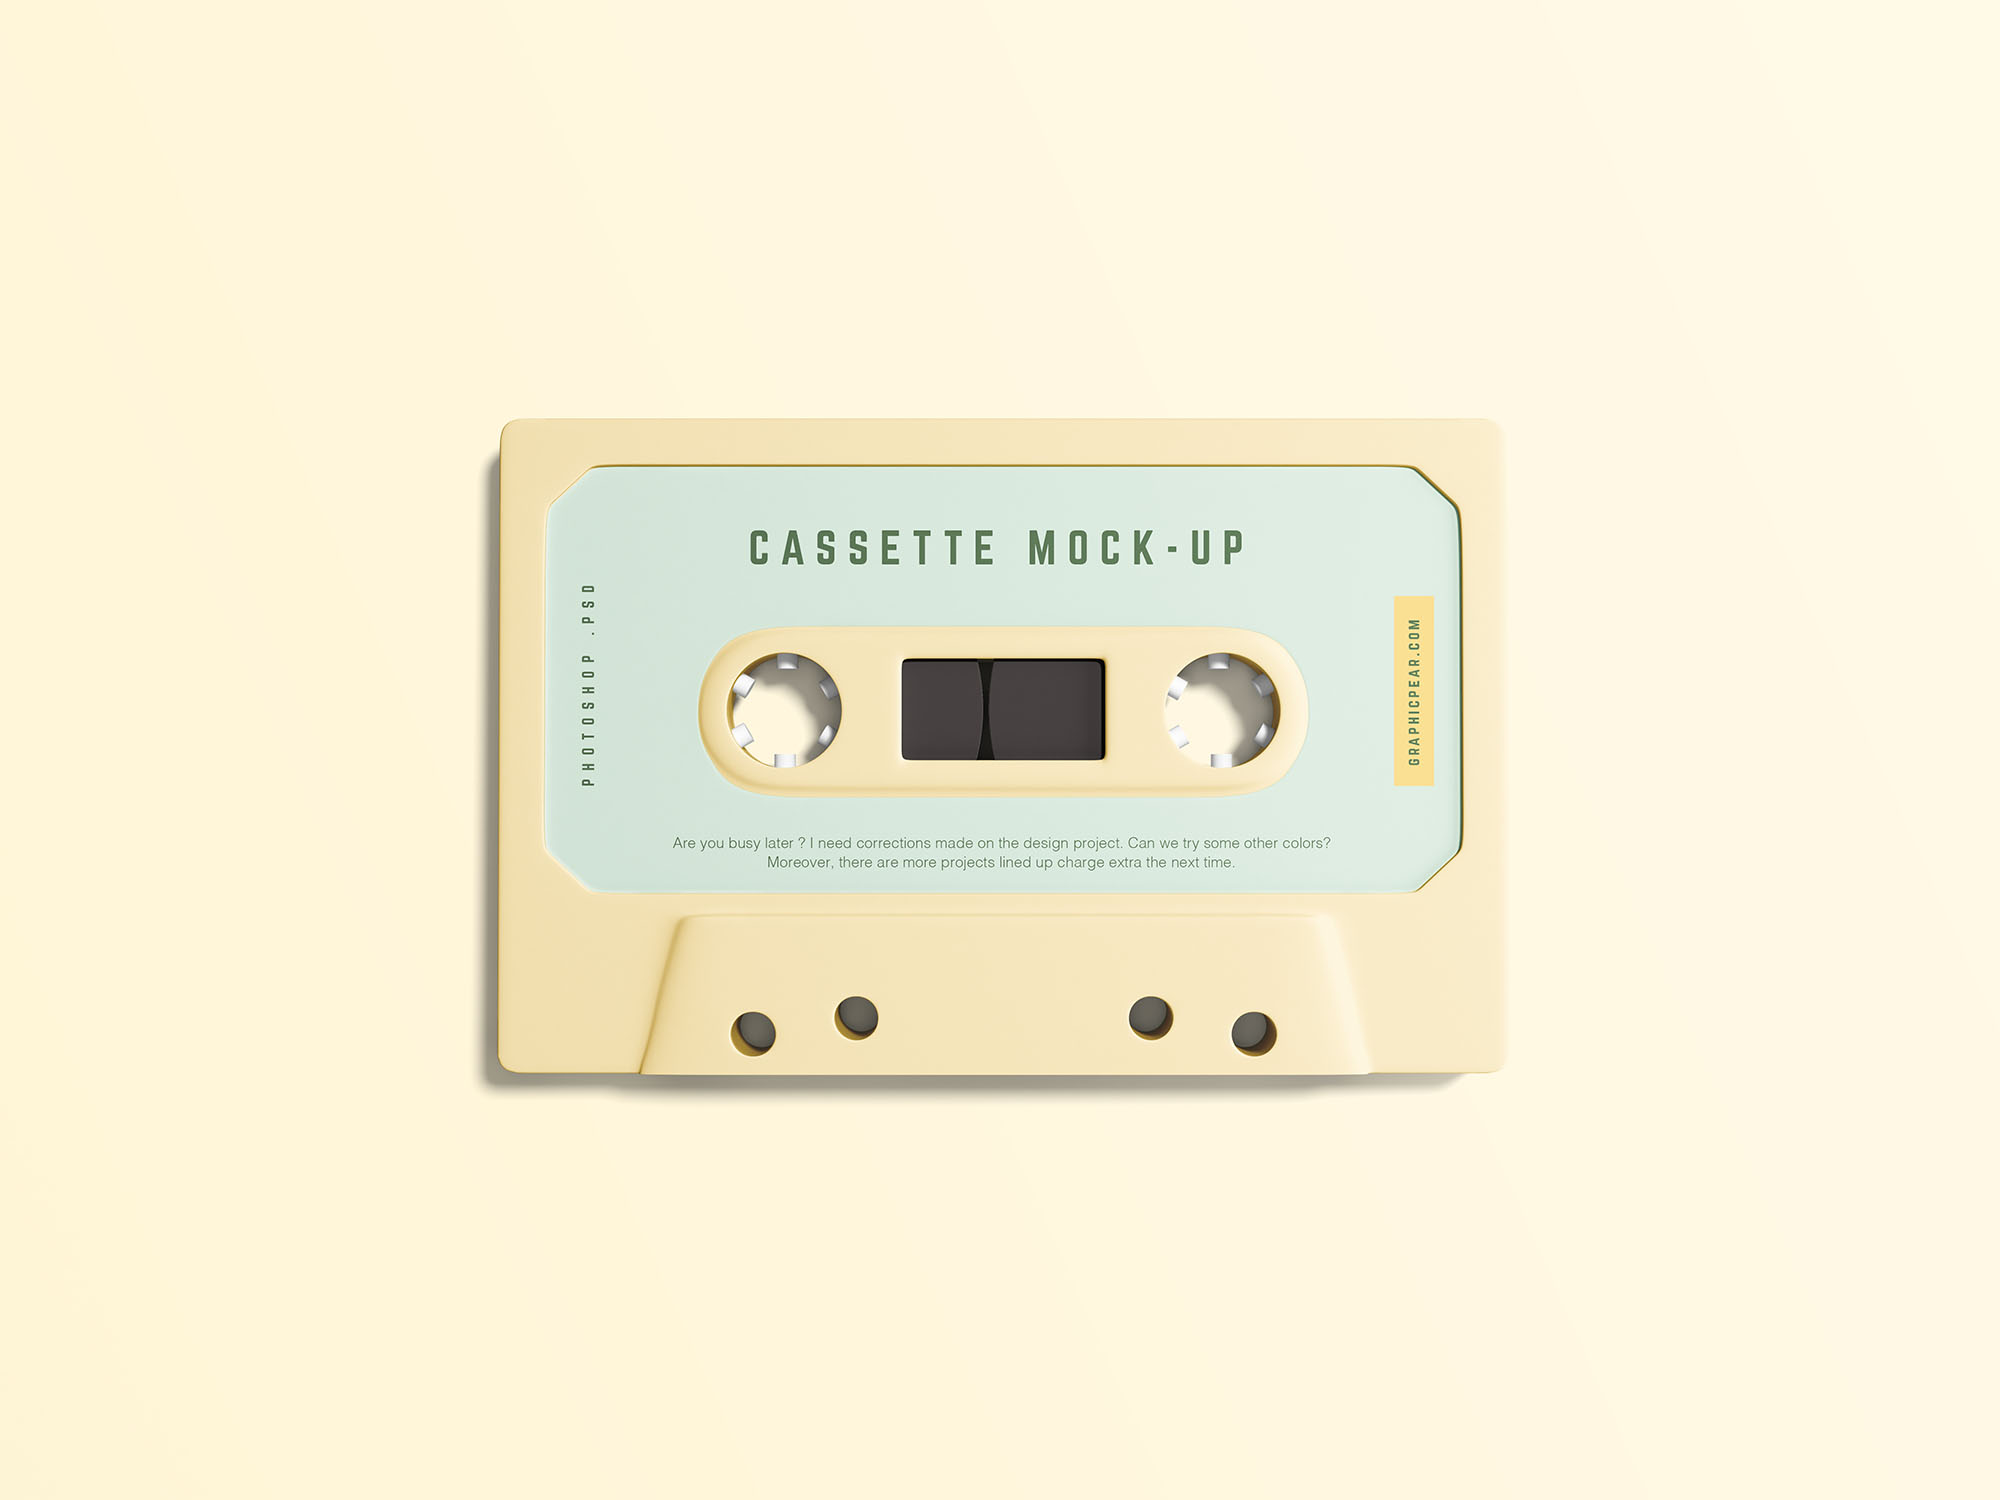 复古音乐磁带外观设计样机模板 Simple Cassette Mockup插图